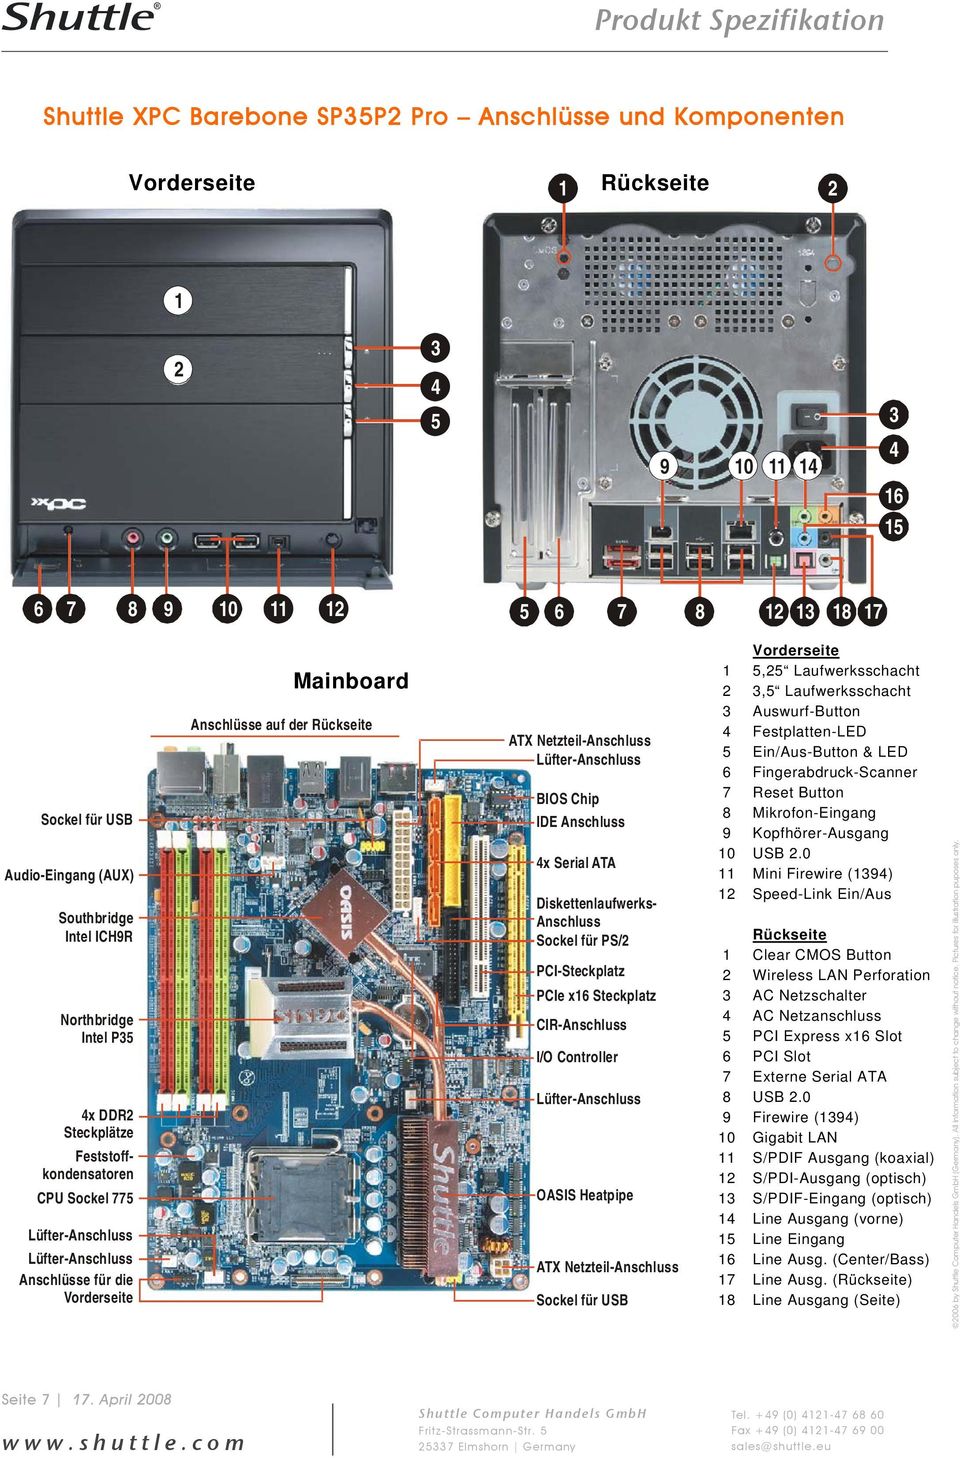 Steckplatz CIR-Anschluss I/O Controller OASIS Heatpipe ATX Netzteil-Anschluss Sockel für USB 1 10 11 1 10 11 1 1 1 1 1 1, Laufwerksschacht, Laufwerksschacht Auswurf-Button Festplatten-LED